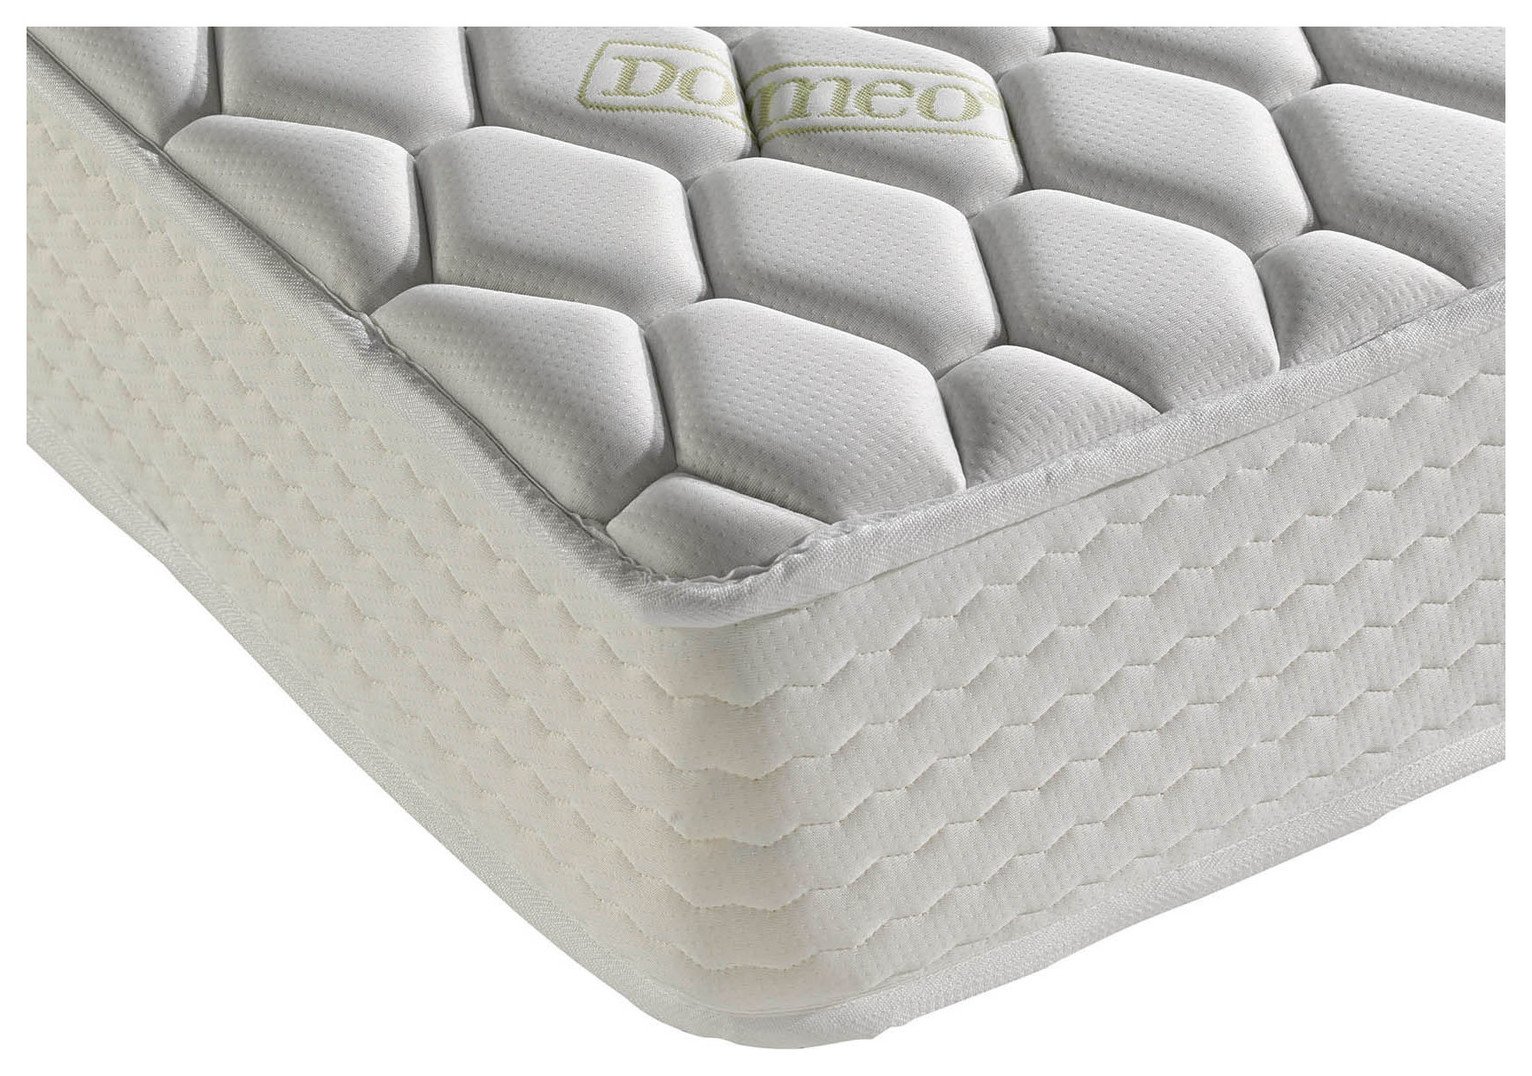 single memory foam mattress argos